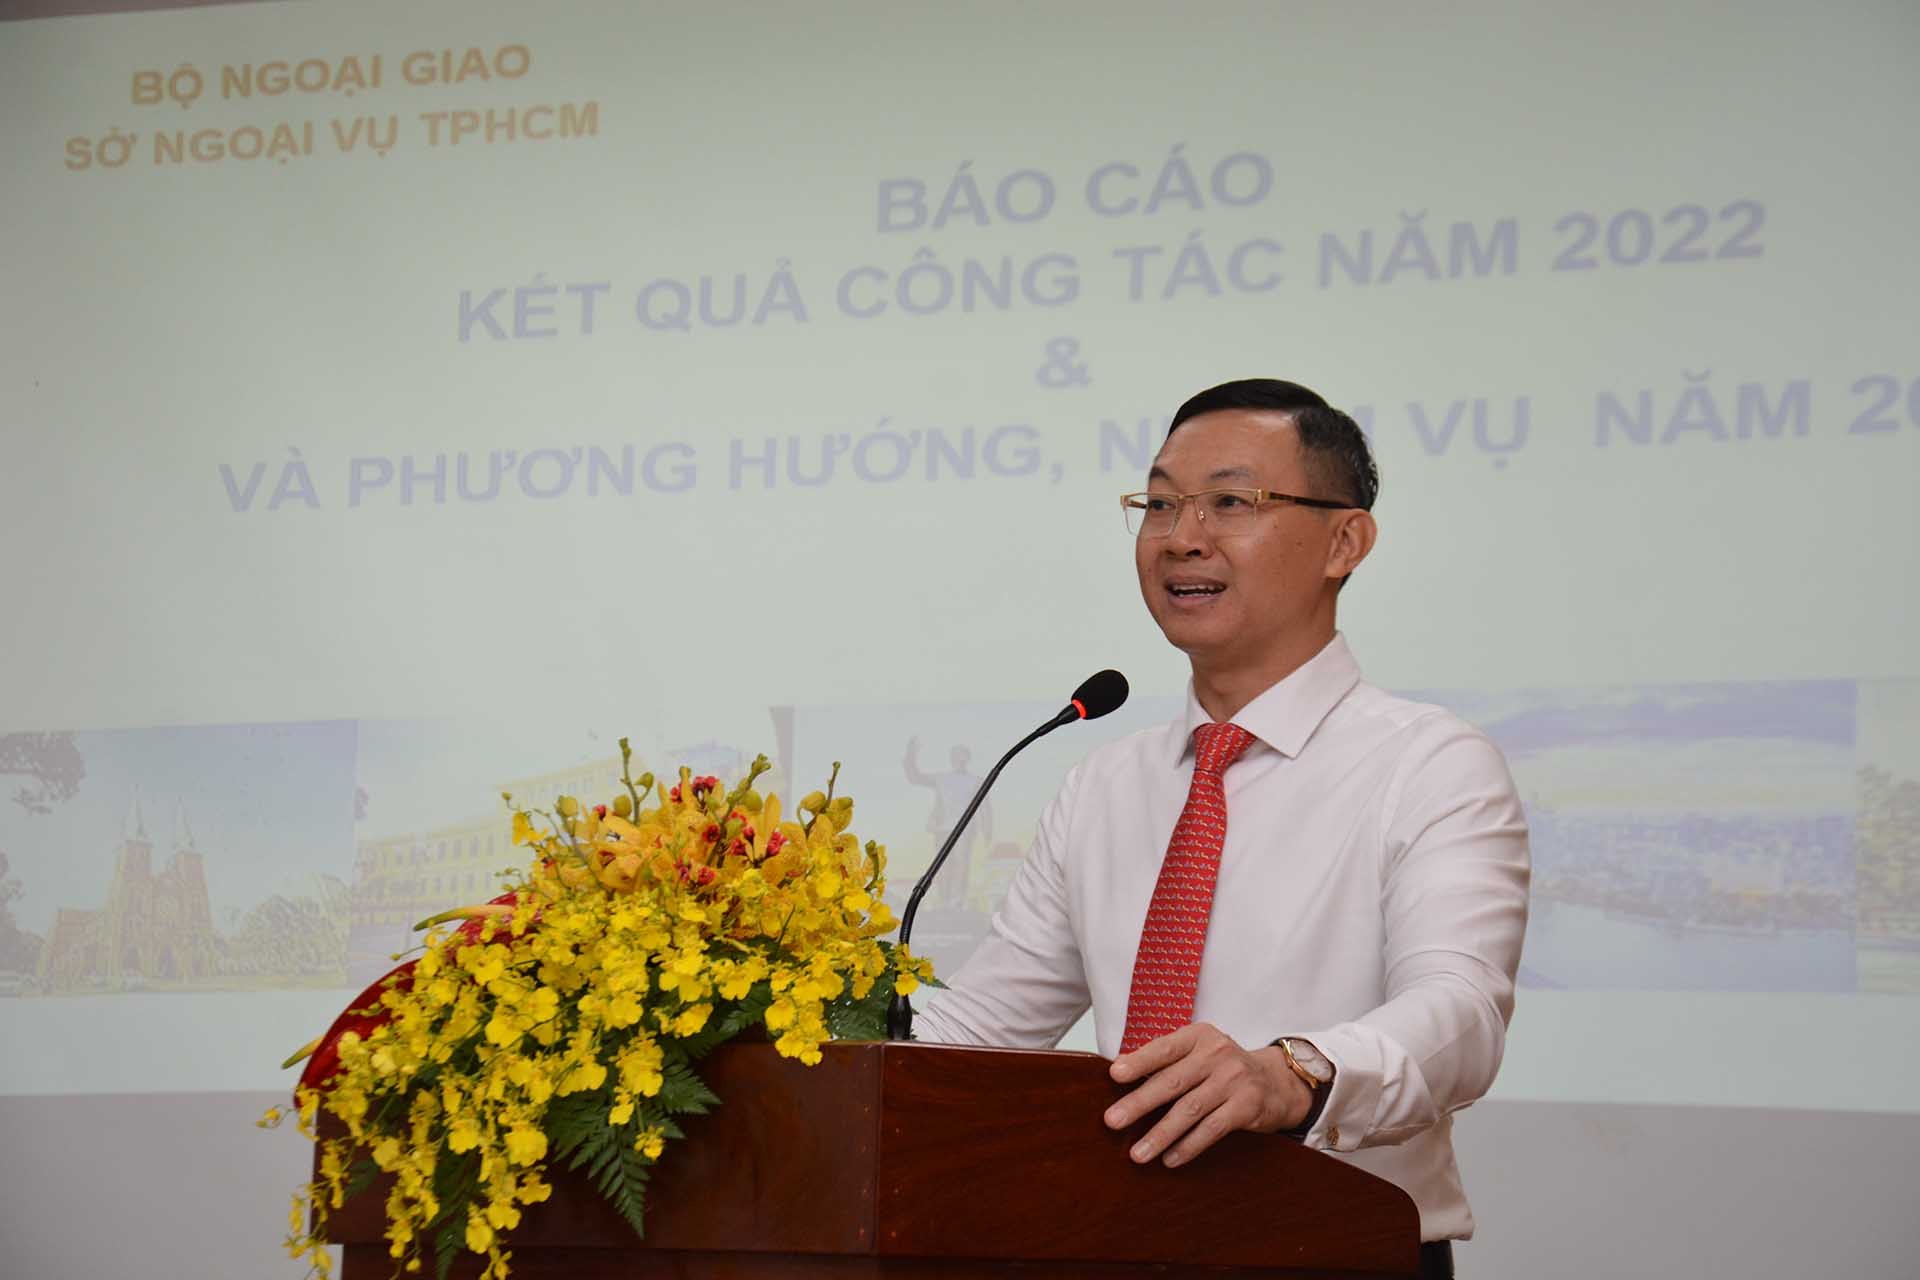 Ông Trần Phước Anh, Giám đốc Sở Ngoại vụ TP. Hồ Chí Minh phát biểu.